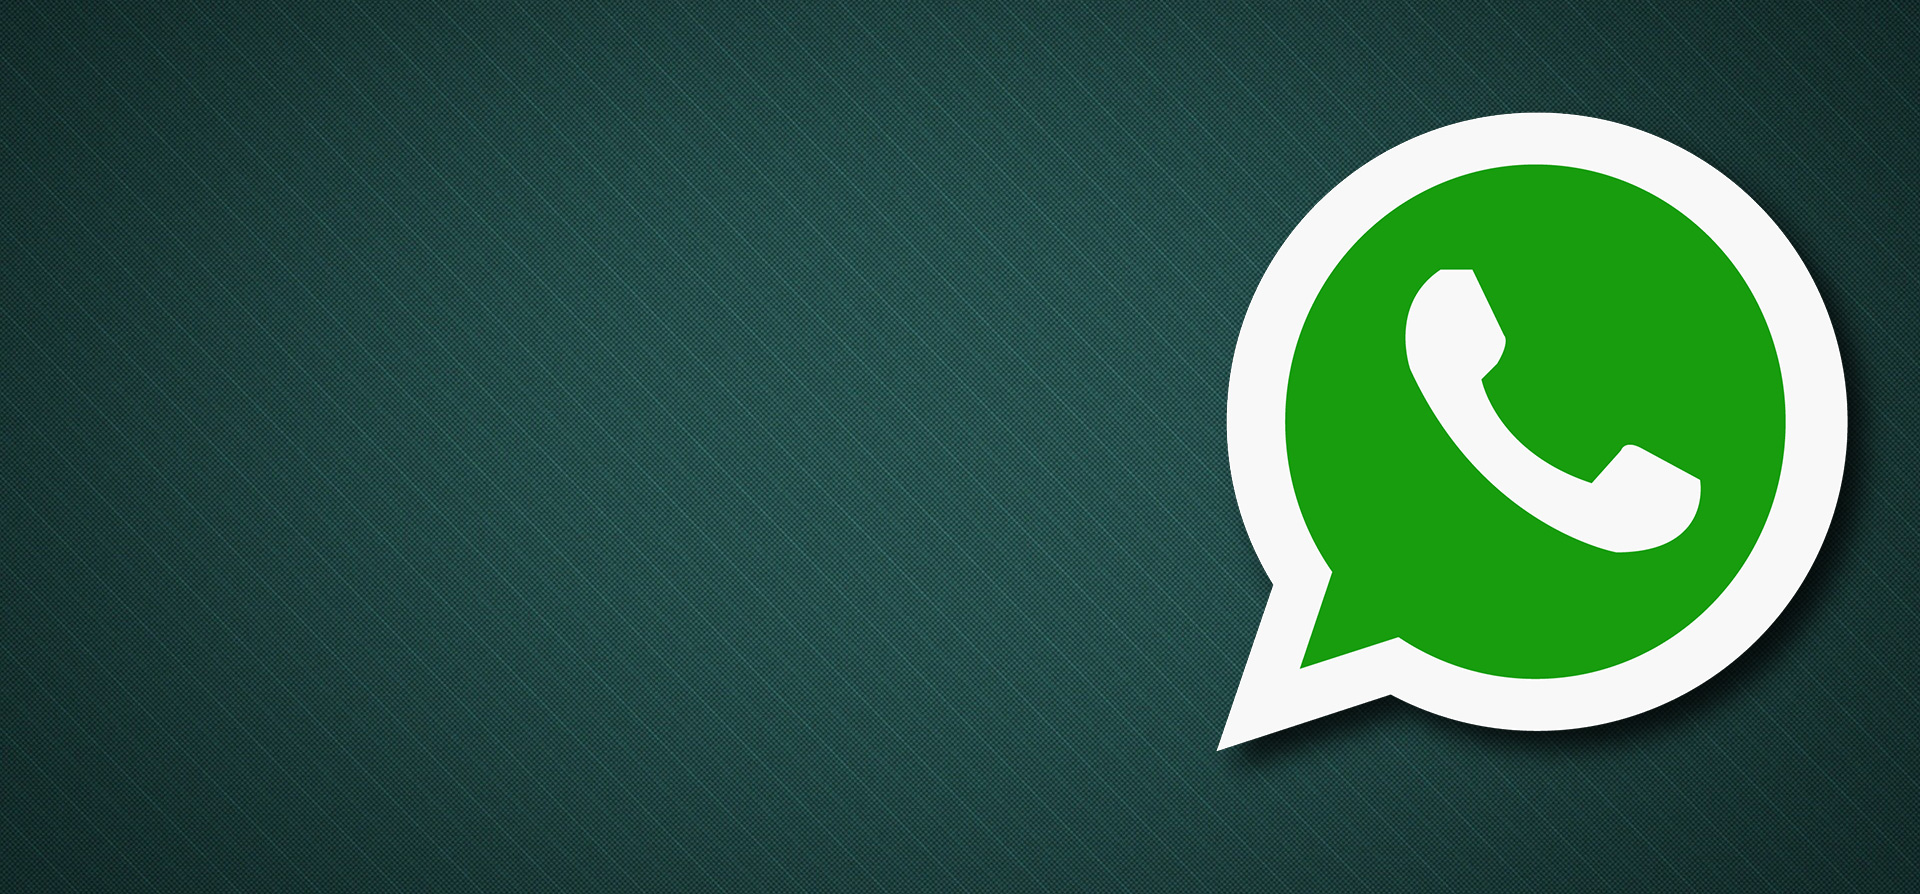 Cancellare i messaggi entro 5 minuti su WhatsApp: il nuovo servizio per iOS